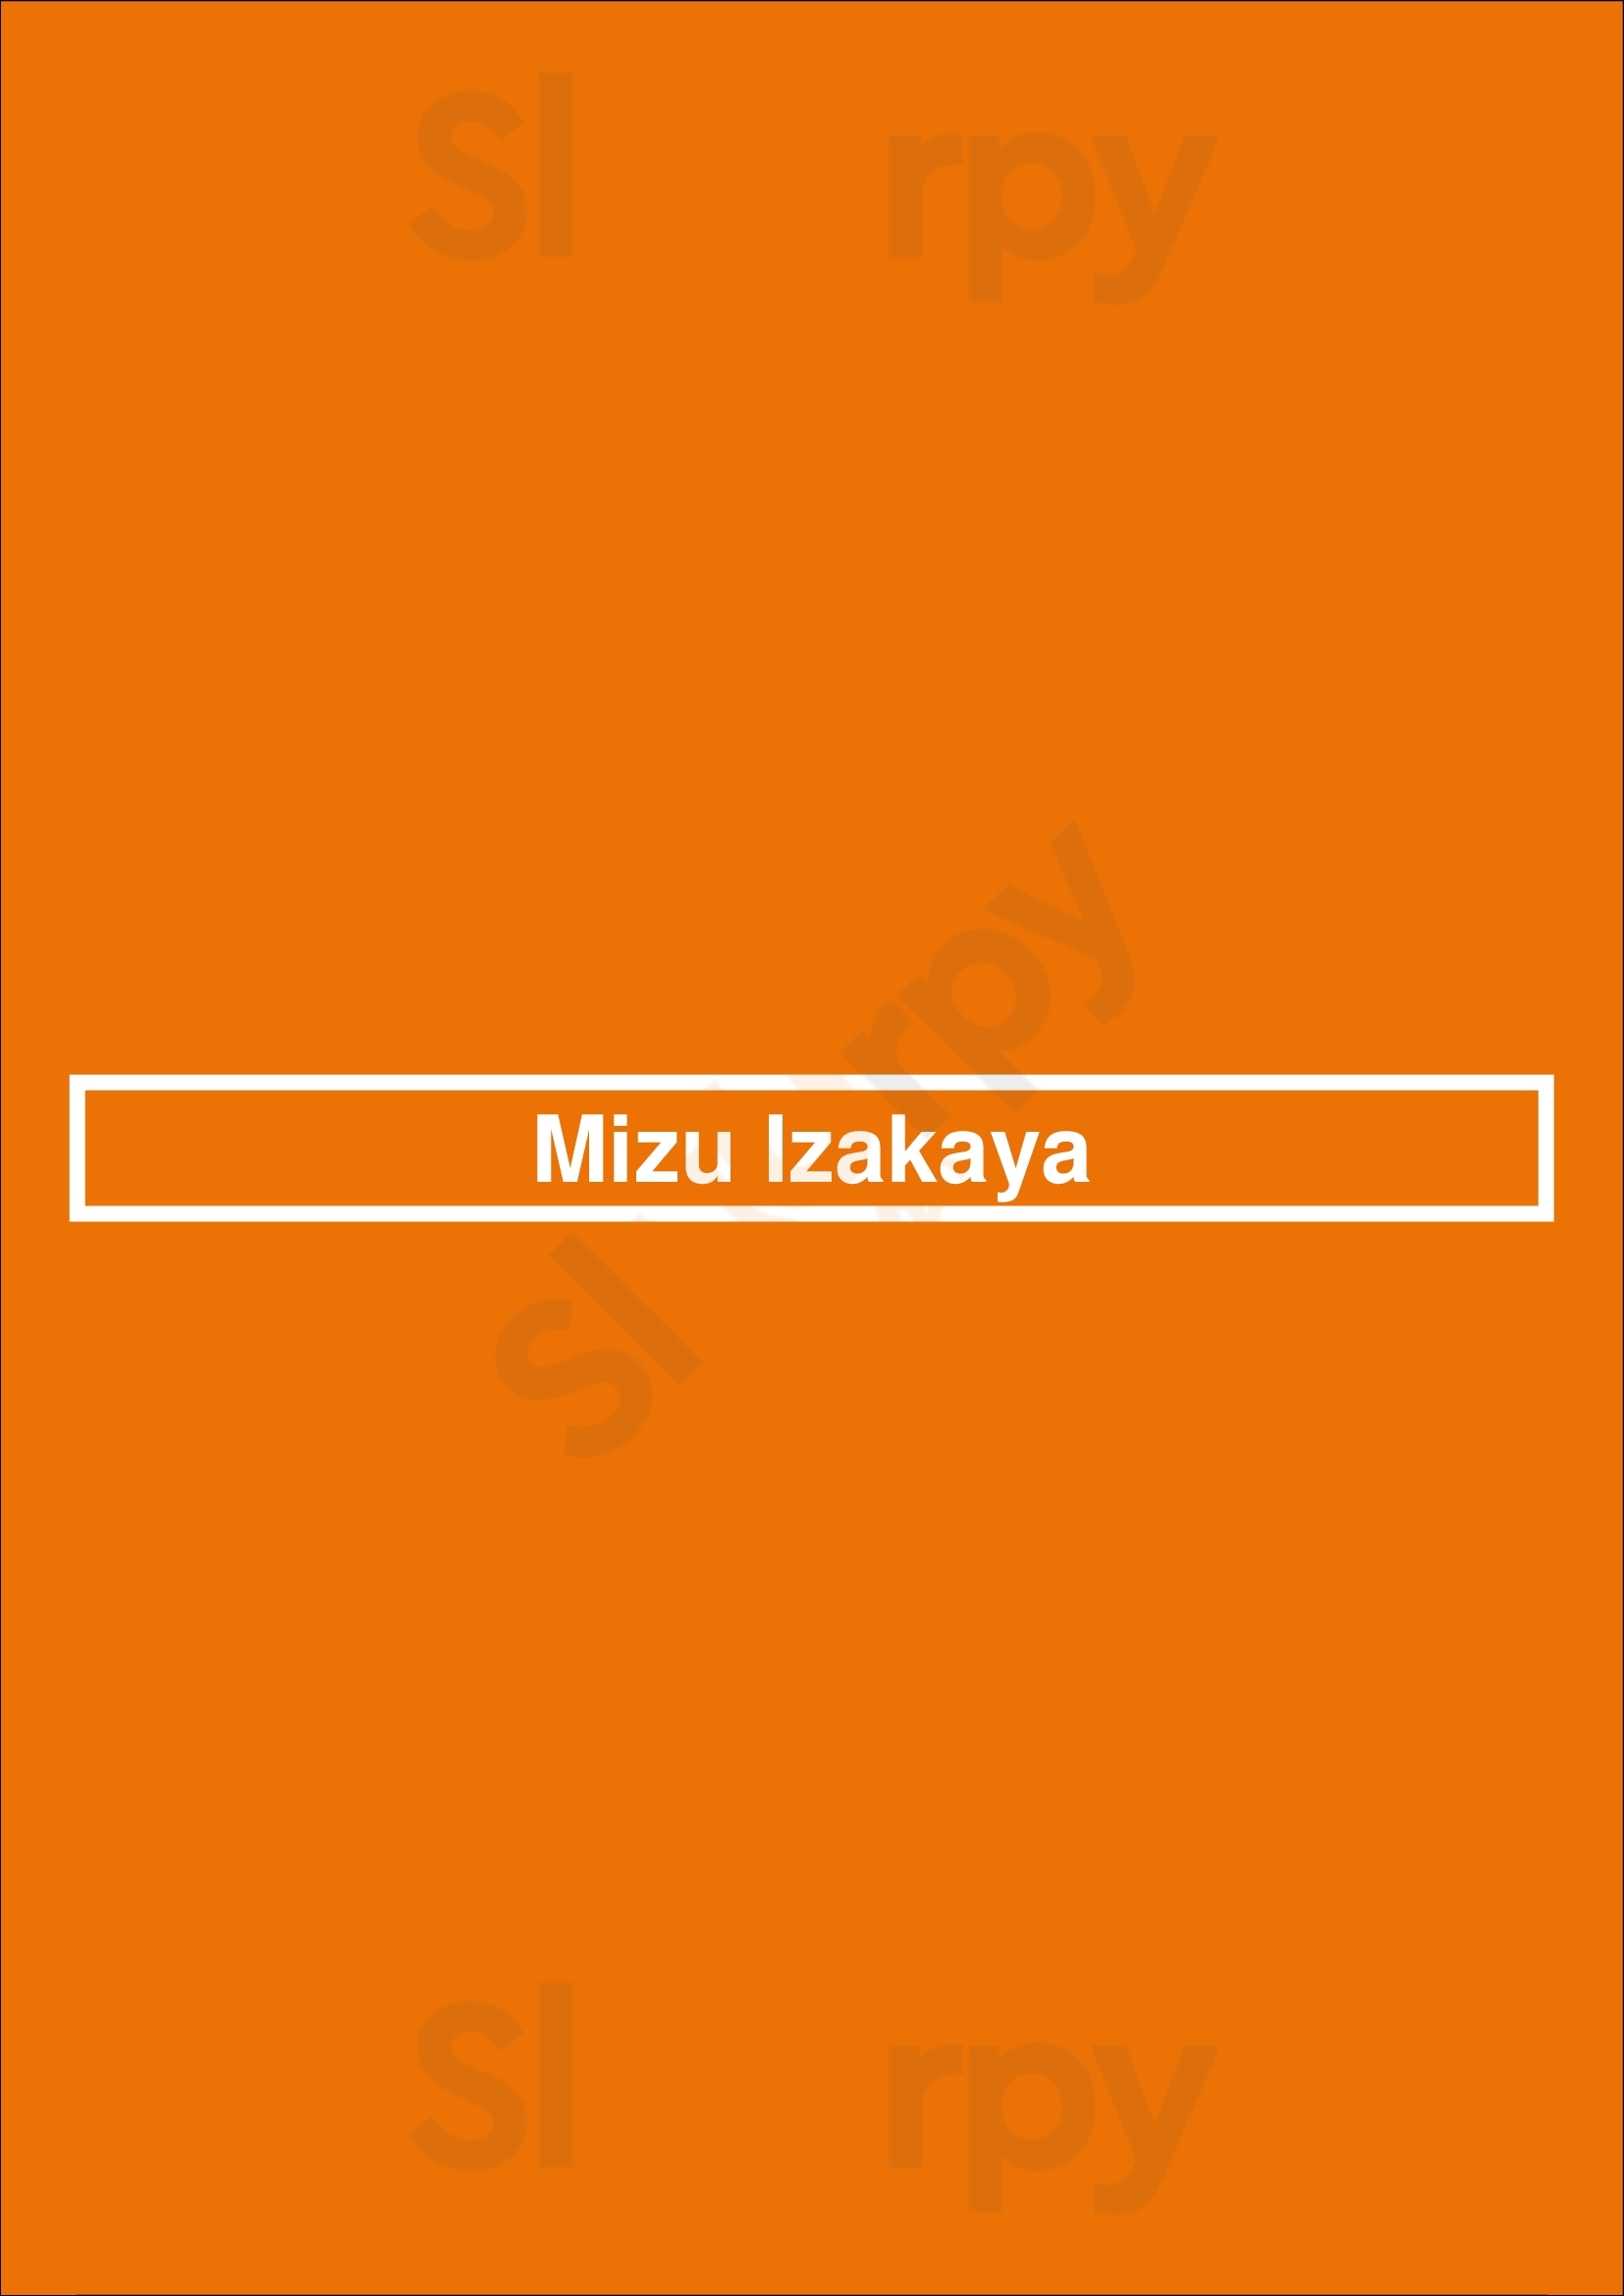 Mizu Izakaya Denver Menu - 1